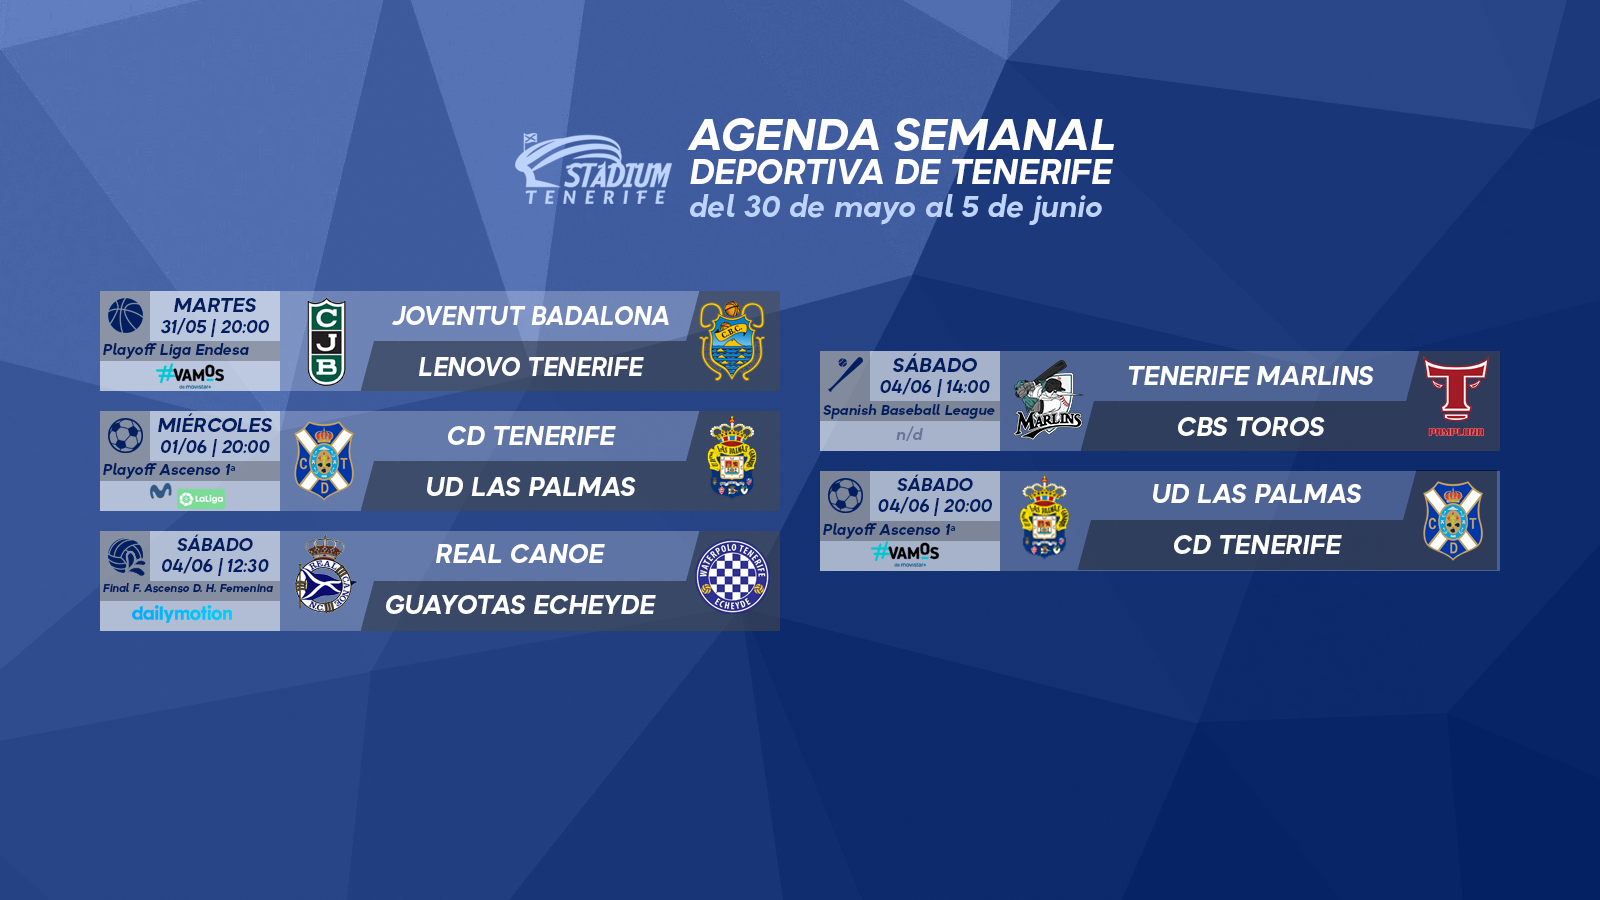 Agenda Semanal Deportiva de Tenerife (30 de mayo al 5 de junio)